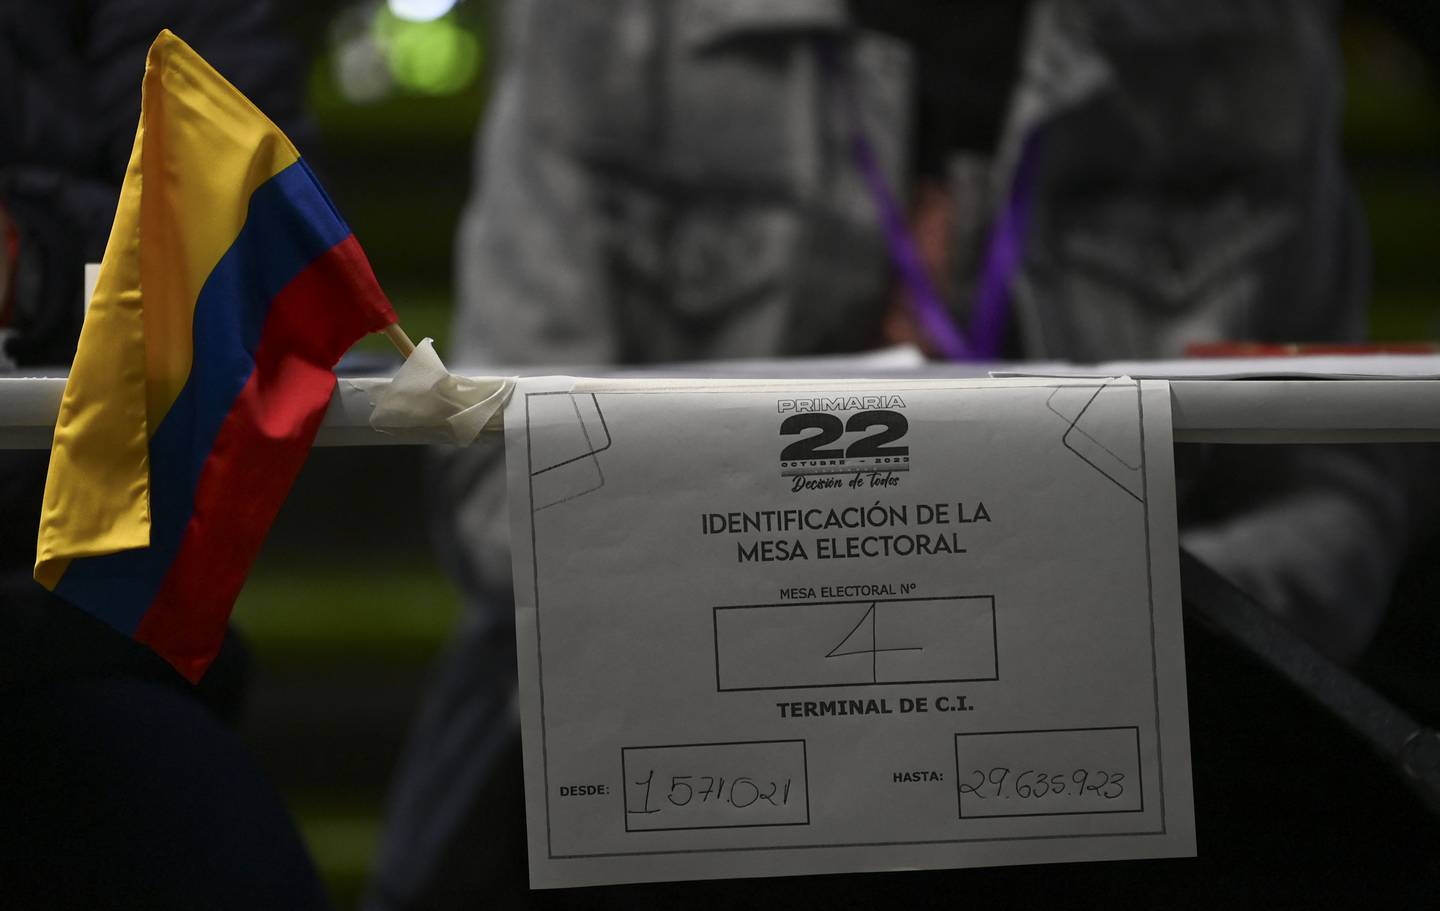 La jornada de votación enfrentó problemas logísticos, incluyendo retrasos en la instalación de las mesas de votación y la acreditación de miembros y testigos, debido a la decisión de la oposición de descartar la asistencia técnica del Consejo Nacional Electoral (CNE).